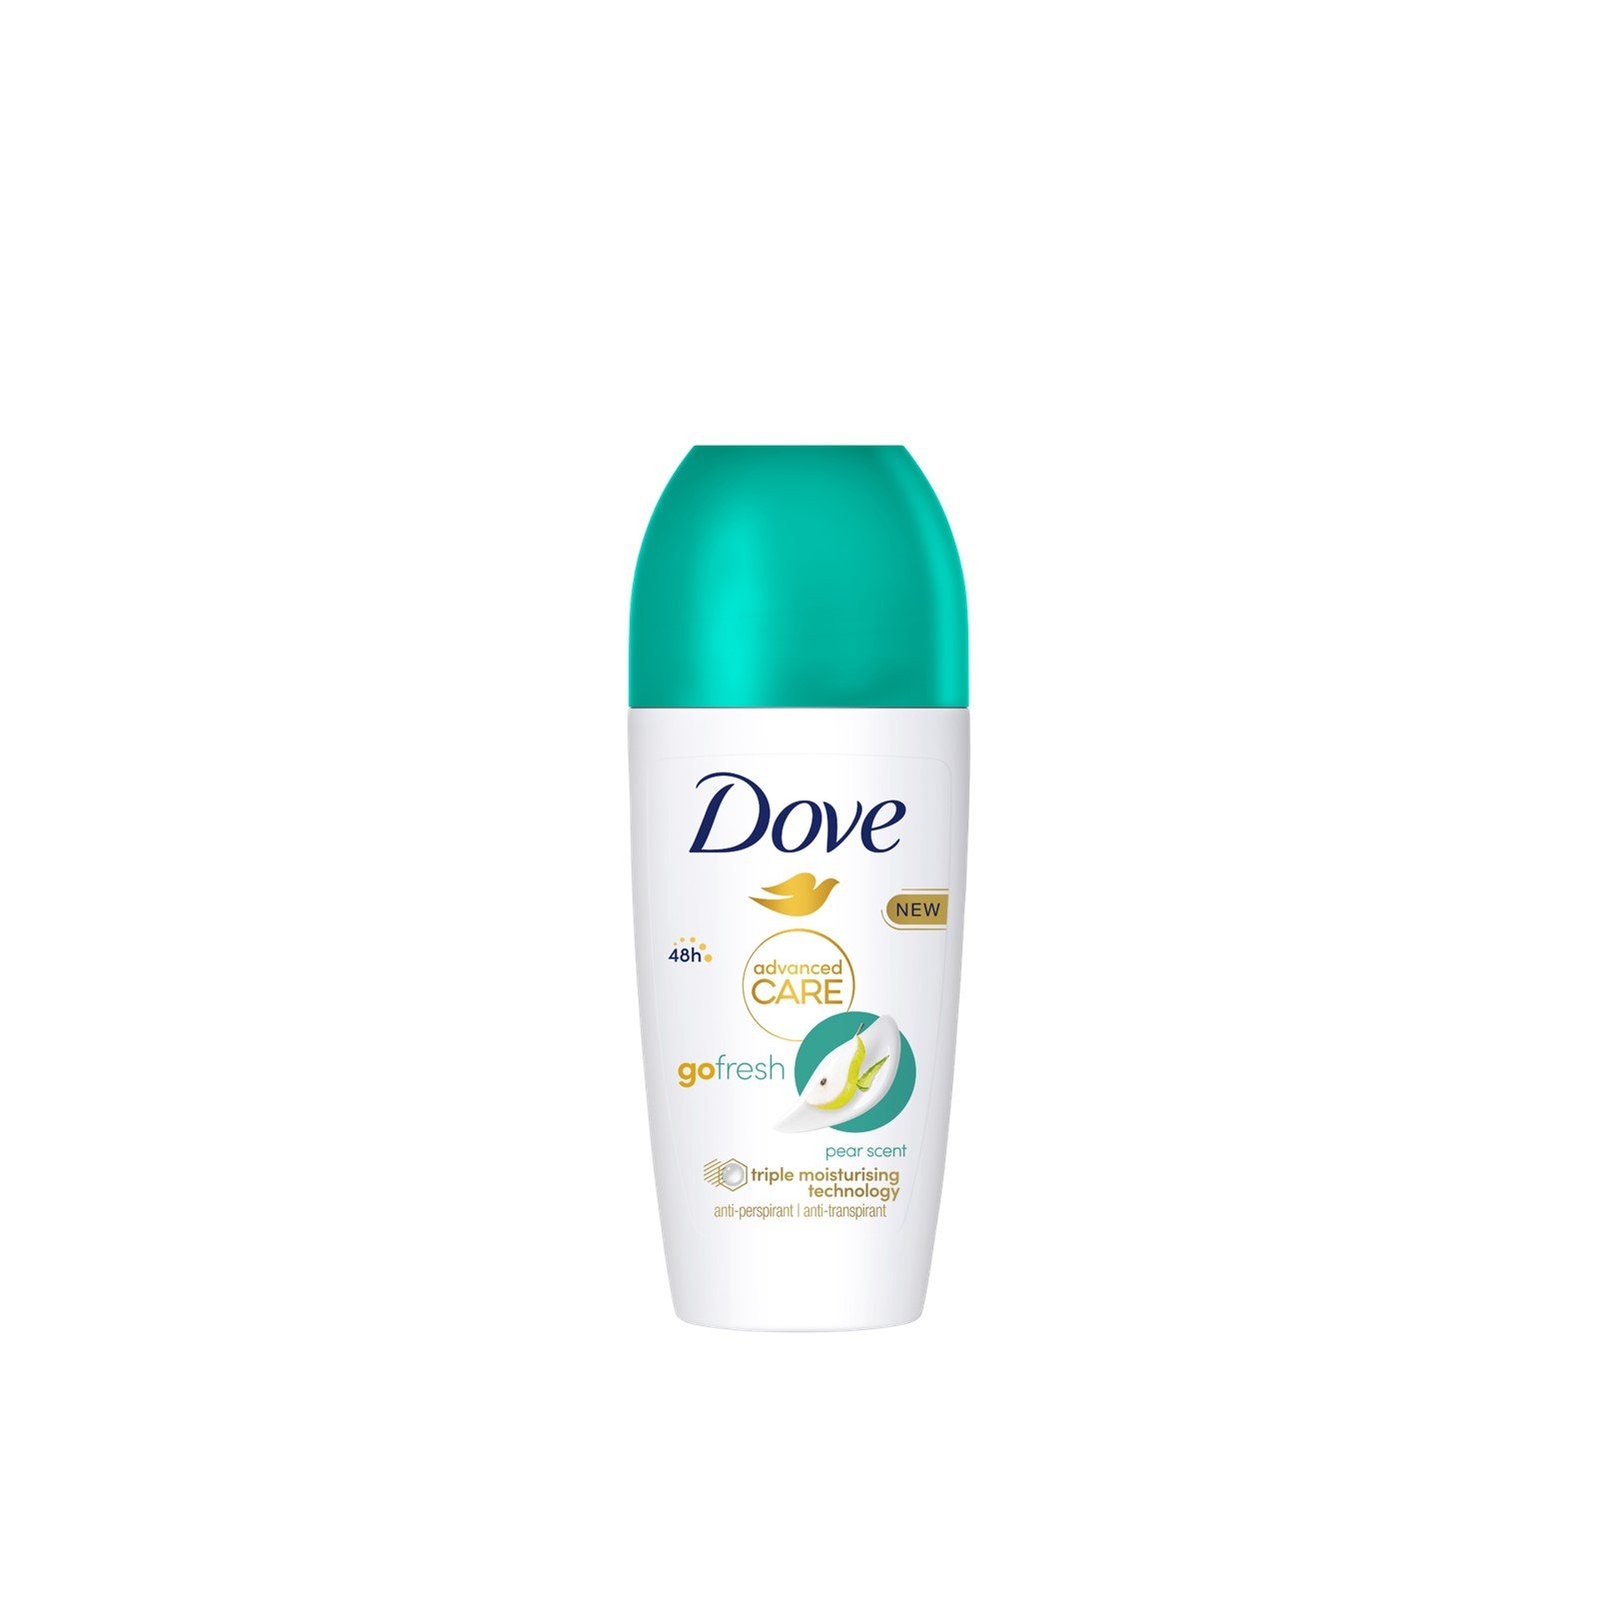 Dove Advanced Care Go Fresh Pear Scent 48h Anti-Perspirant Deodorant Roll-On 50ml